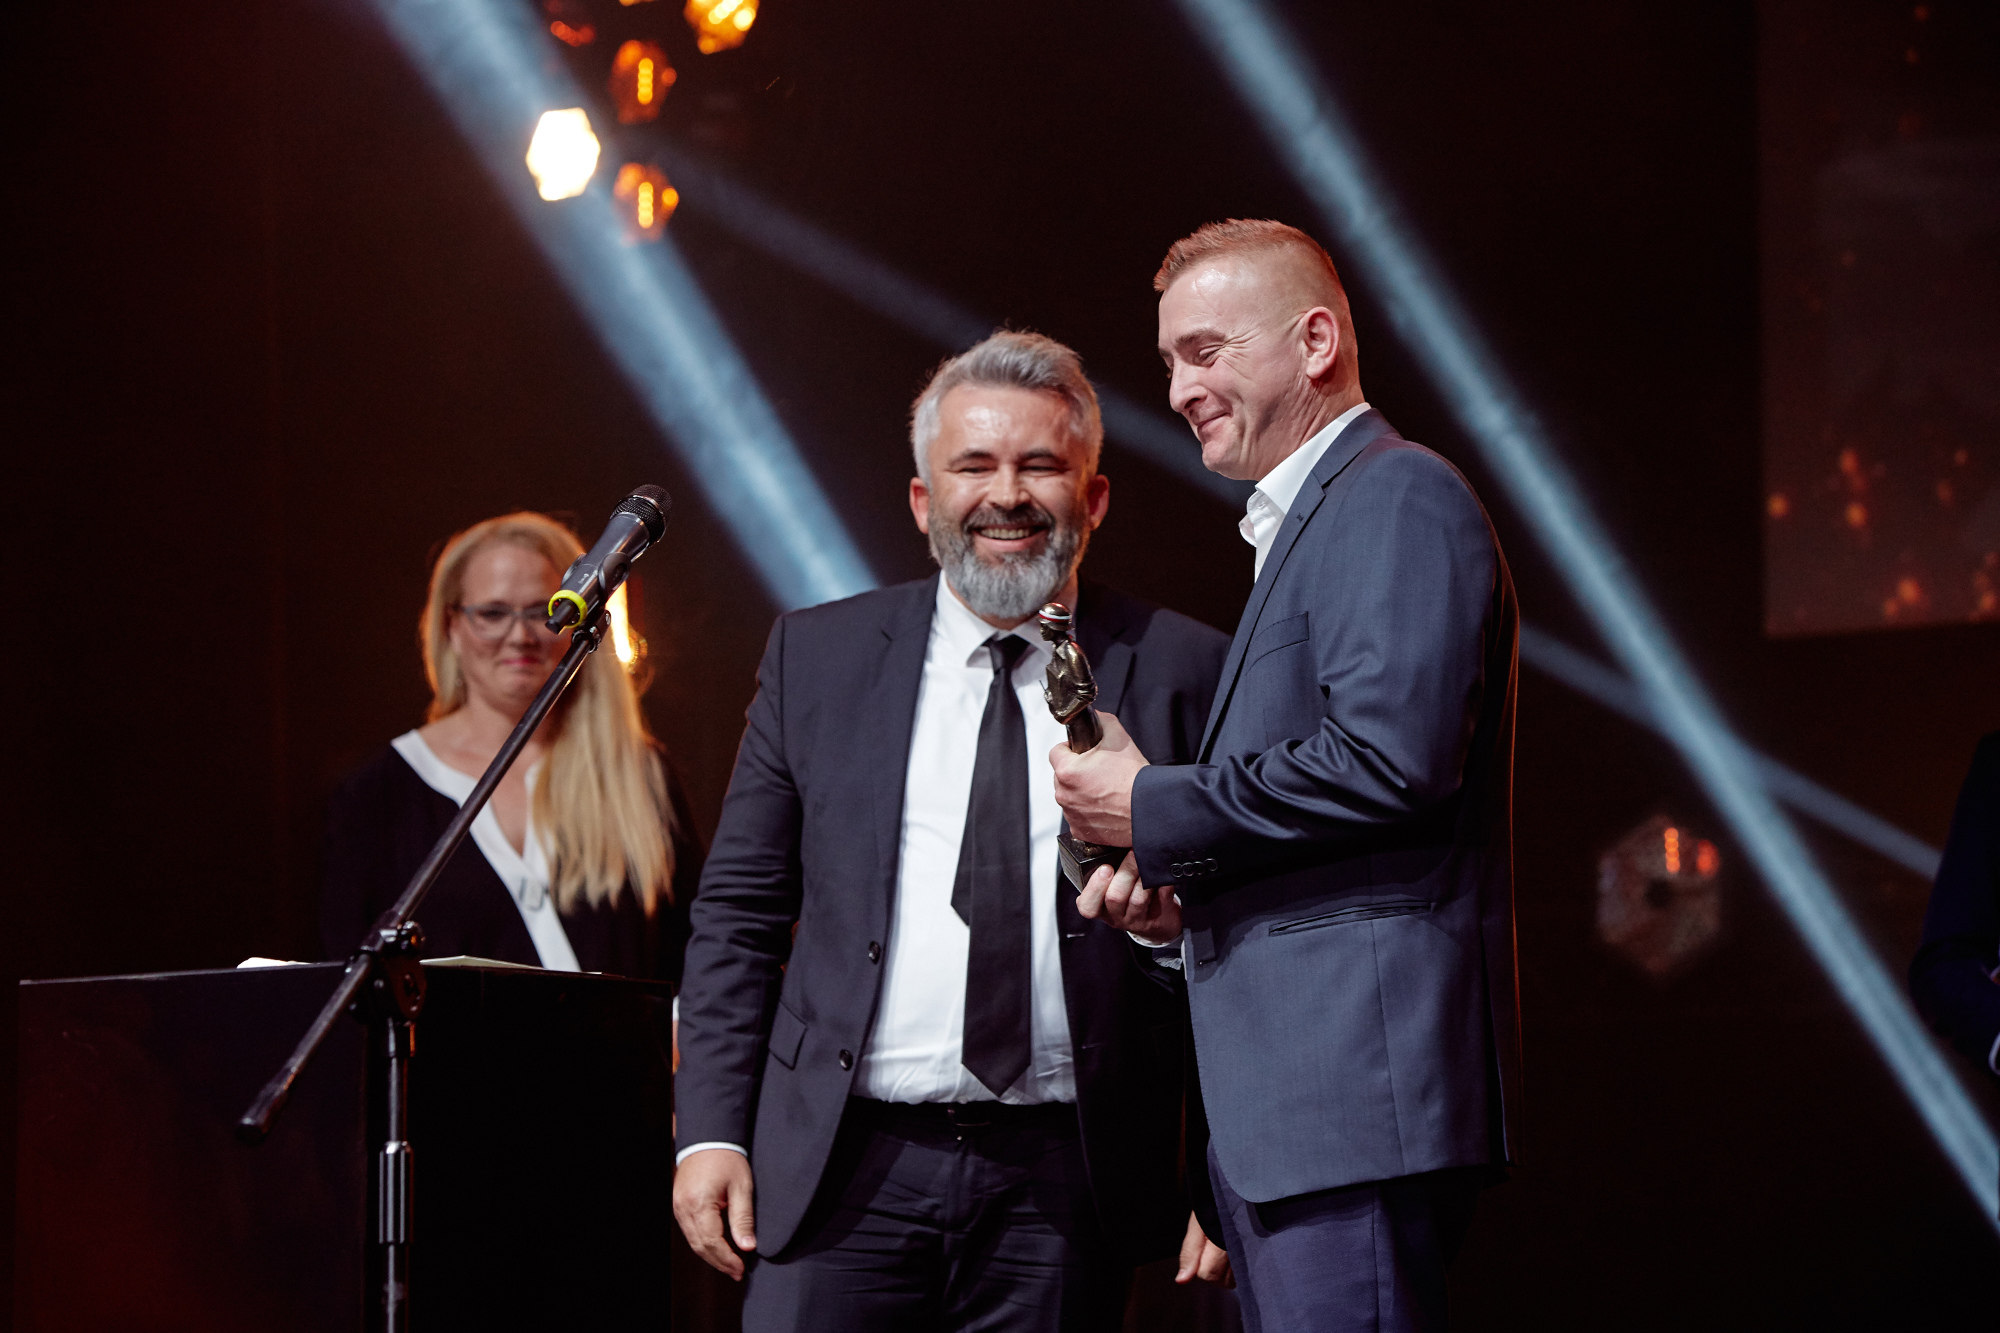 Nagroda_BohaterONy_2019_gala_fot_Michał_Moryl MNIEJSZE ZDJĘCIE (3)